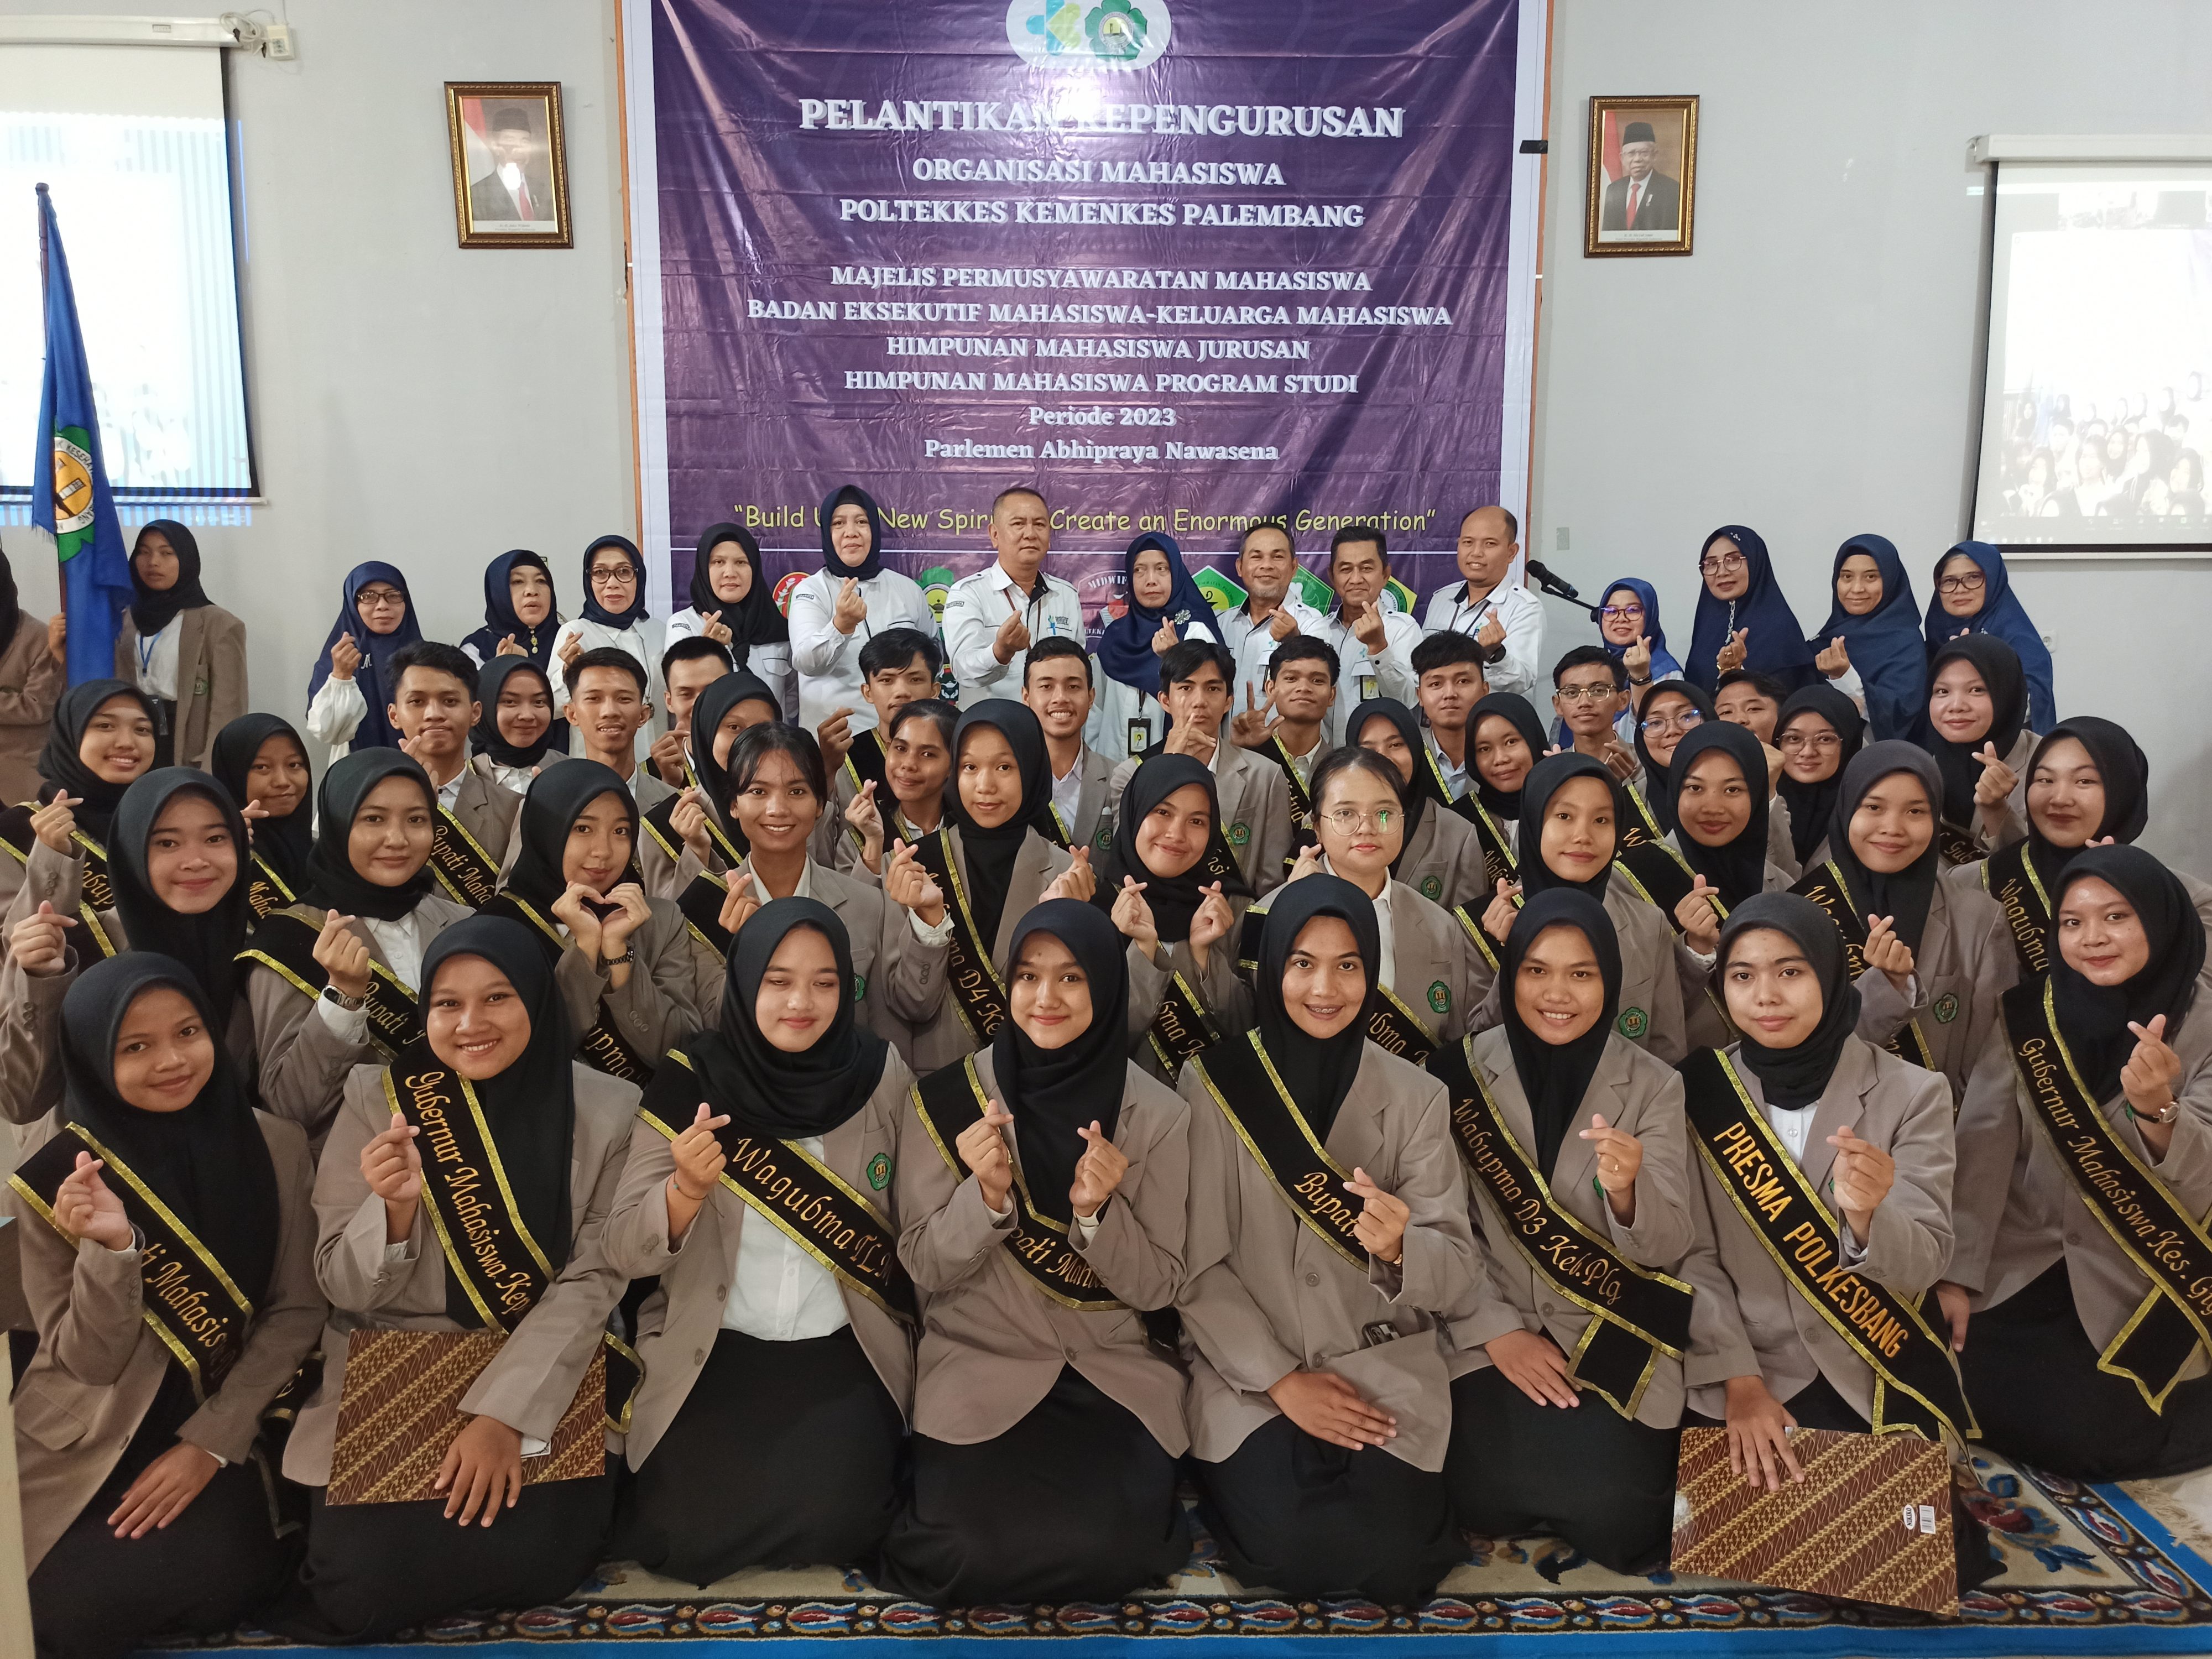 Pelantikan (Ormawa) Organisasi Mahasiswa Poltekkes Kemenkes Palembang Tahun 2023